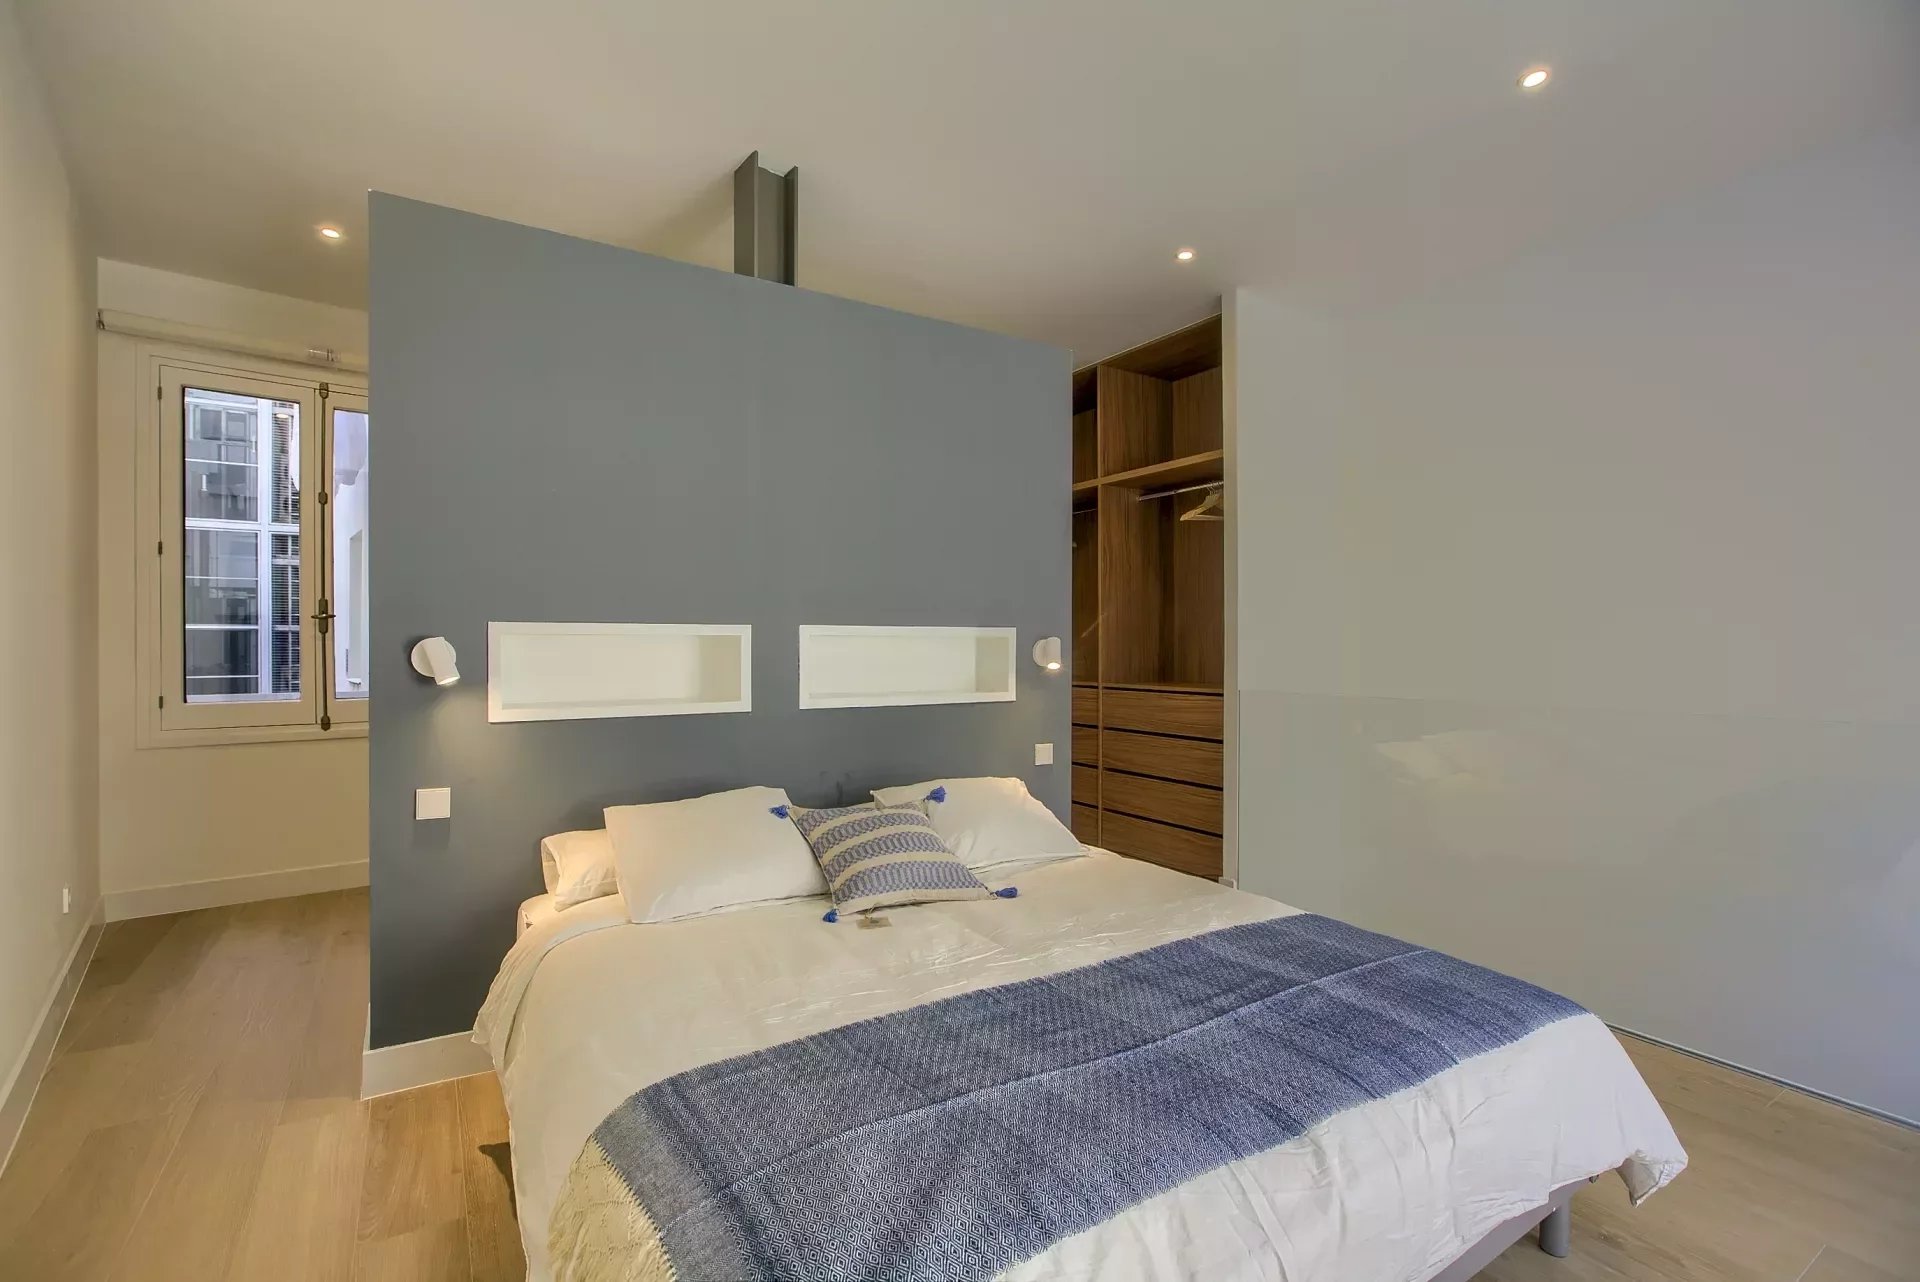 Madrid - Chamberi - Almagro - Triplex meublé de 2 chambres à coucher avec piscine privée - picture 11 title=